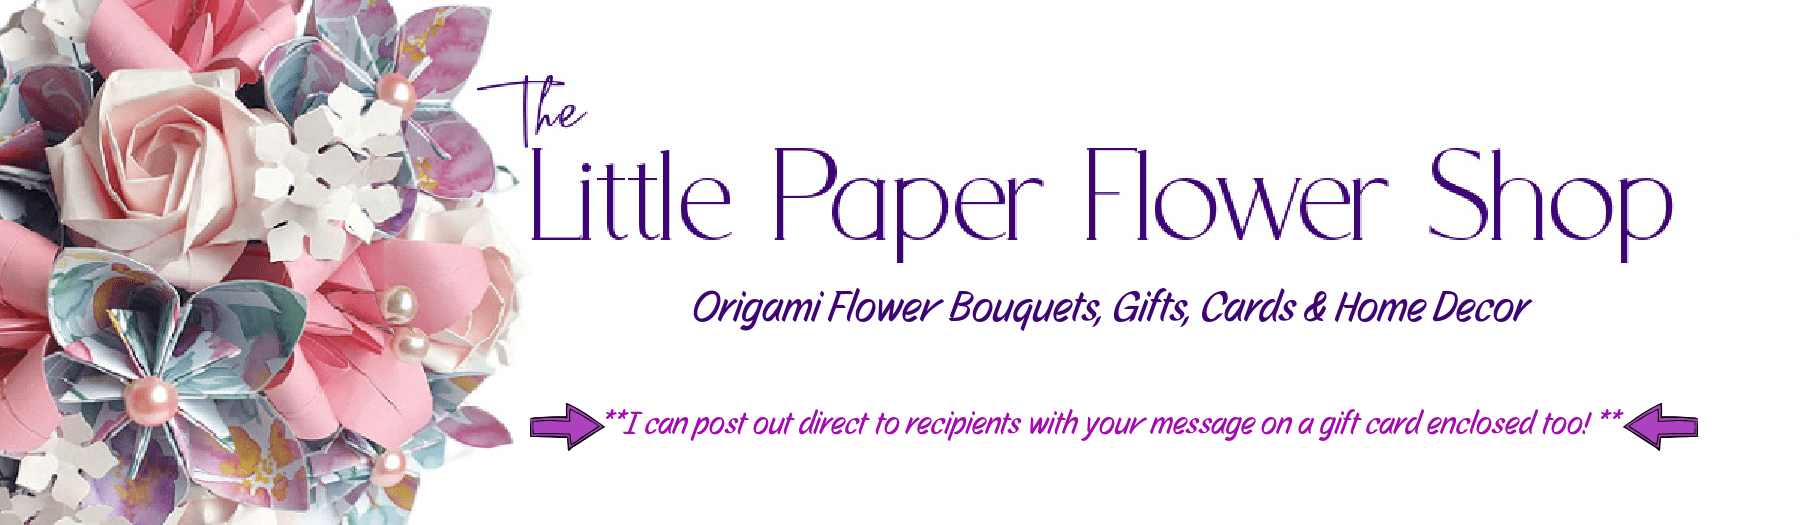 The Little Paper Flower Shop